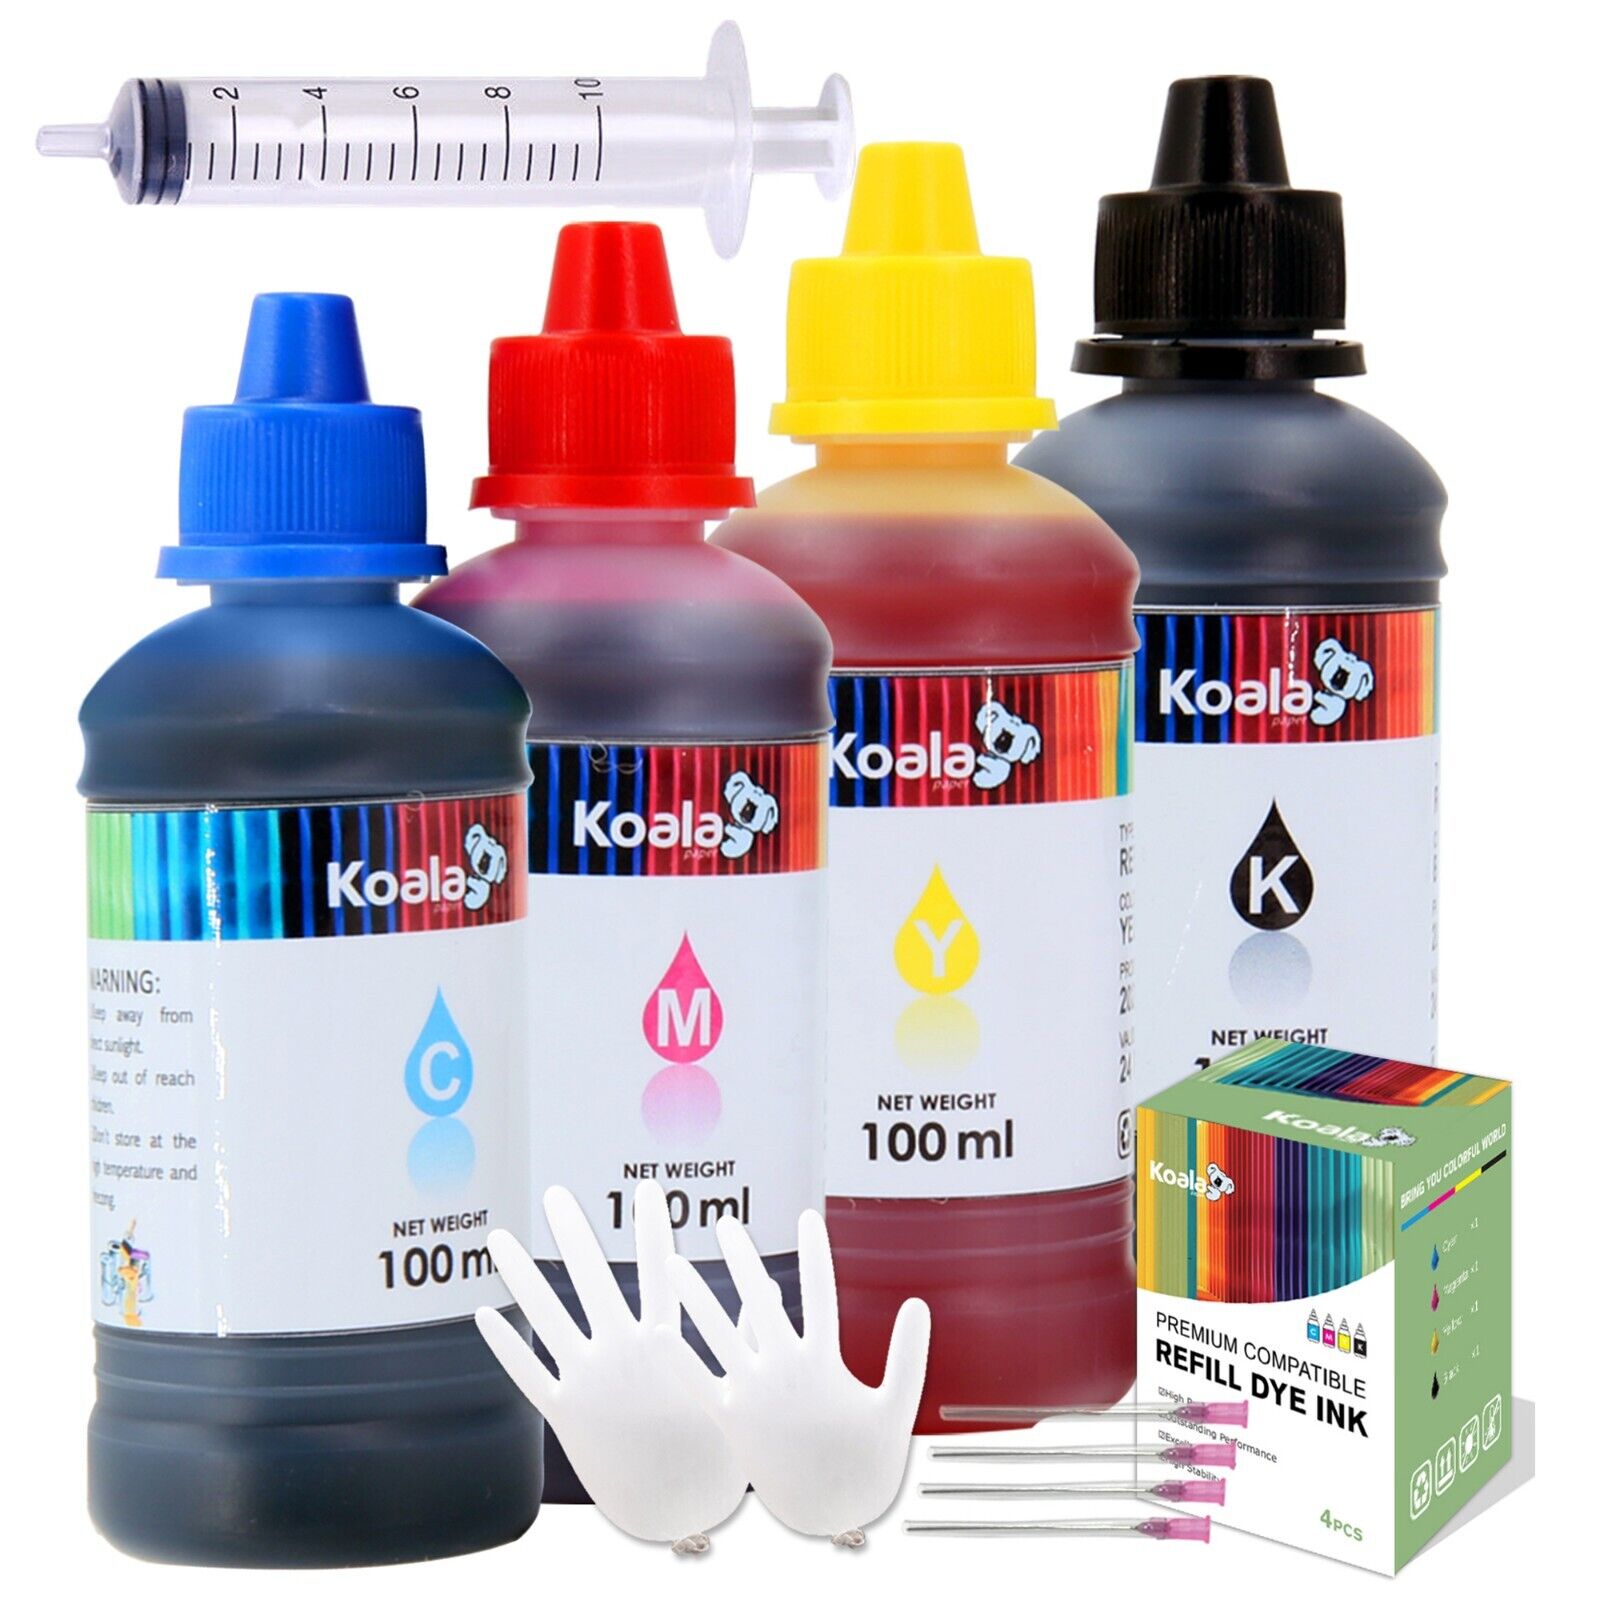 Koala Ink Refill Kits for Canon / Epson / HP / Kodark / Lexmark / Brother Inkjet